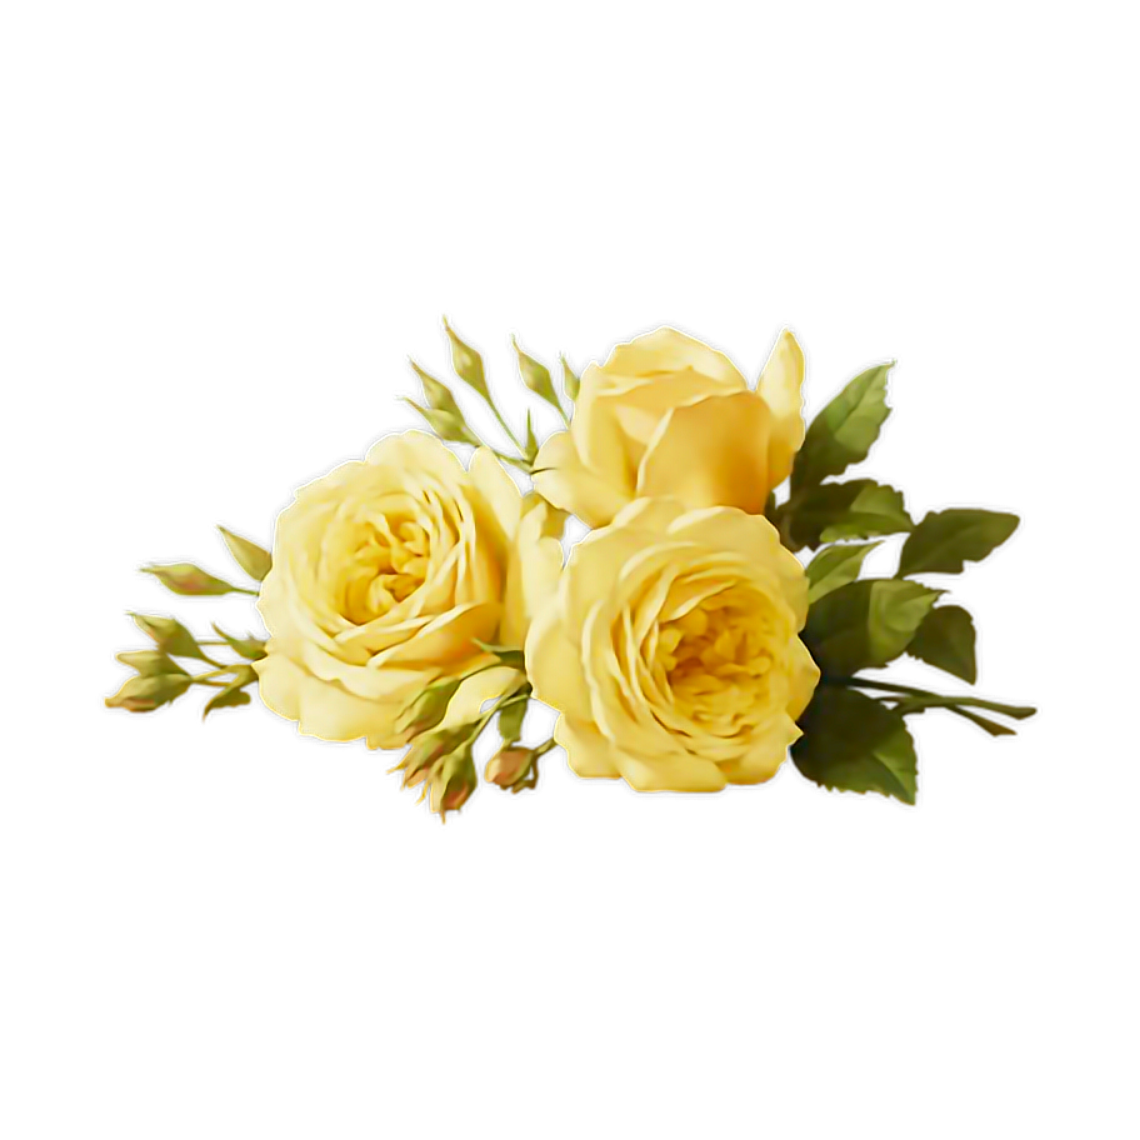 Желтые розы в прическу